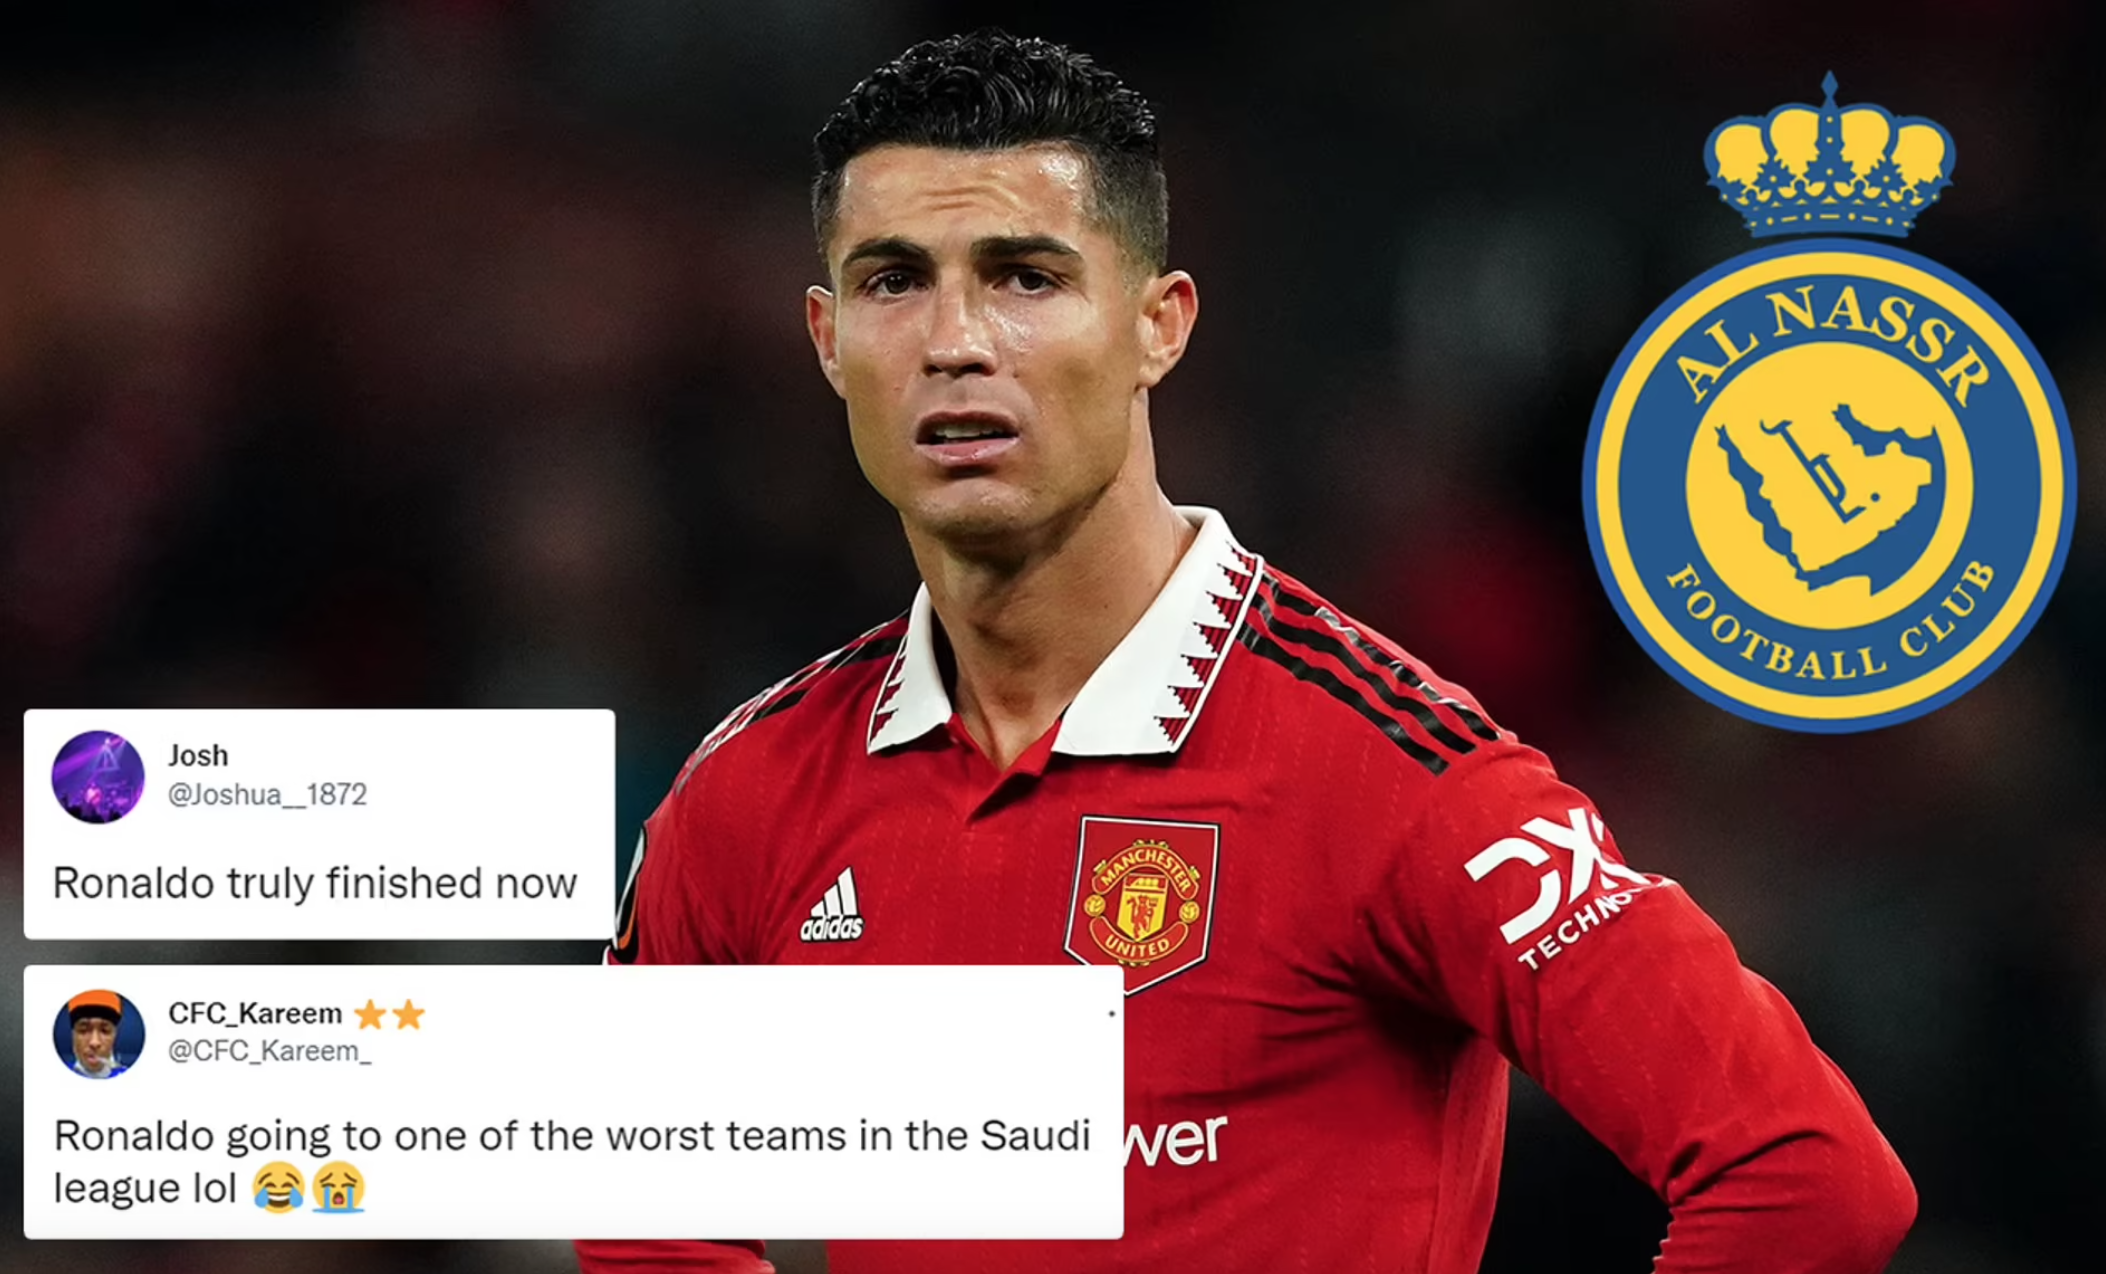 Quỹ lương của Manchester United tăng sau thương vụ chiêu mộ Ronaldo  Thể  thao  Vietnam VietnamPlus